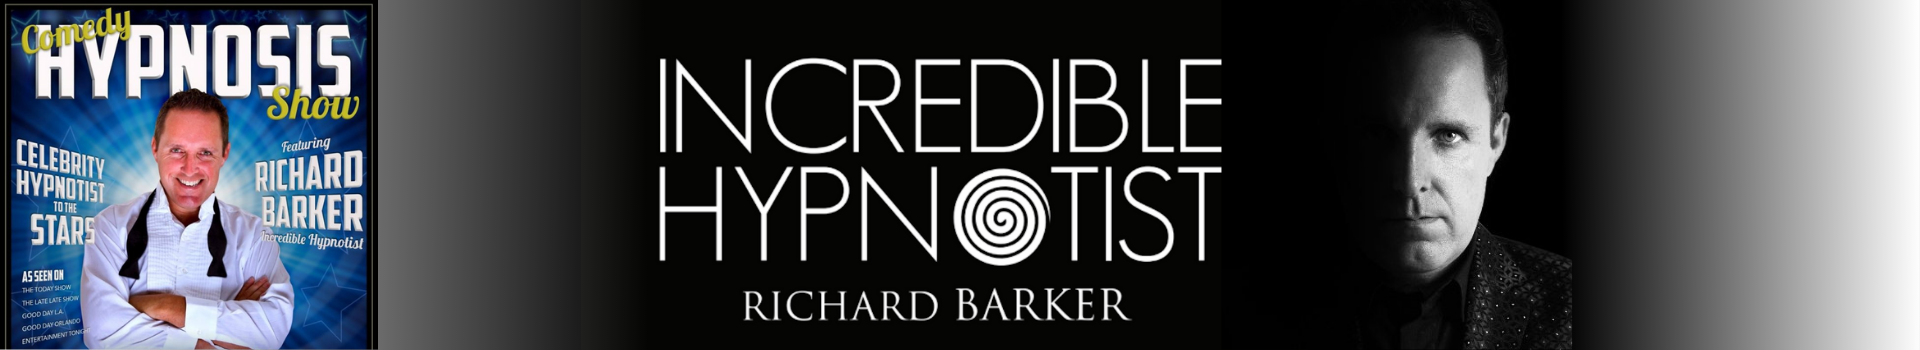 Richard barker hypnotist